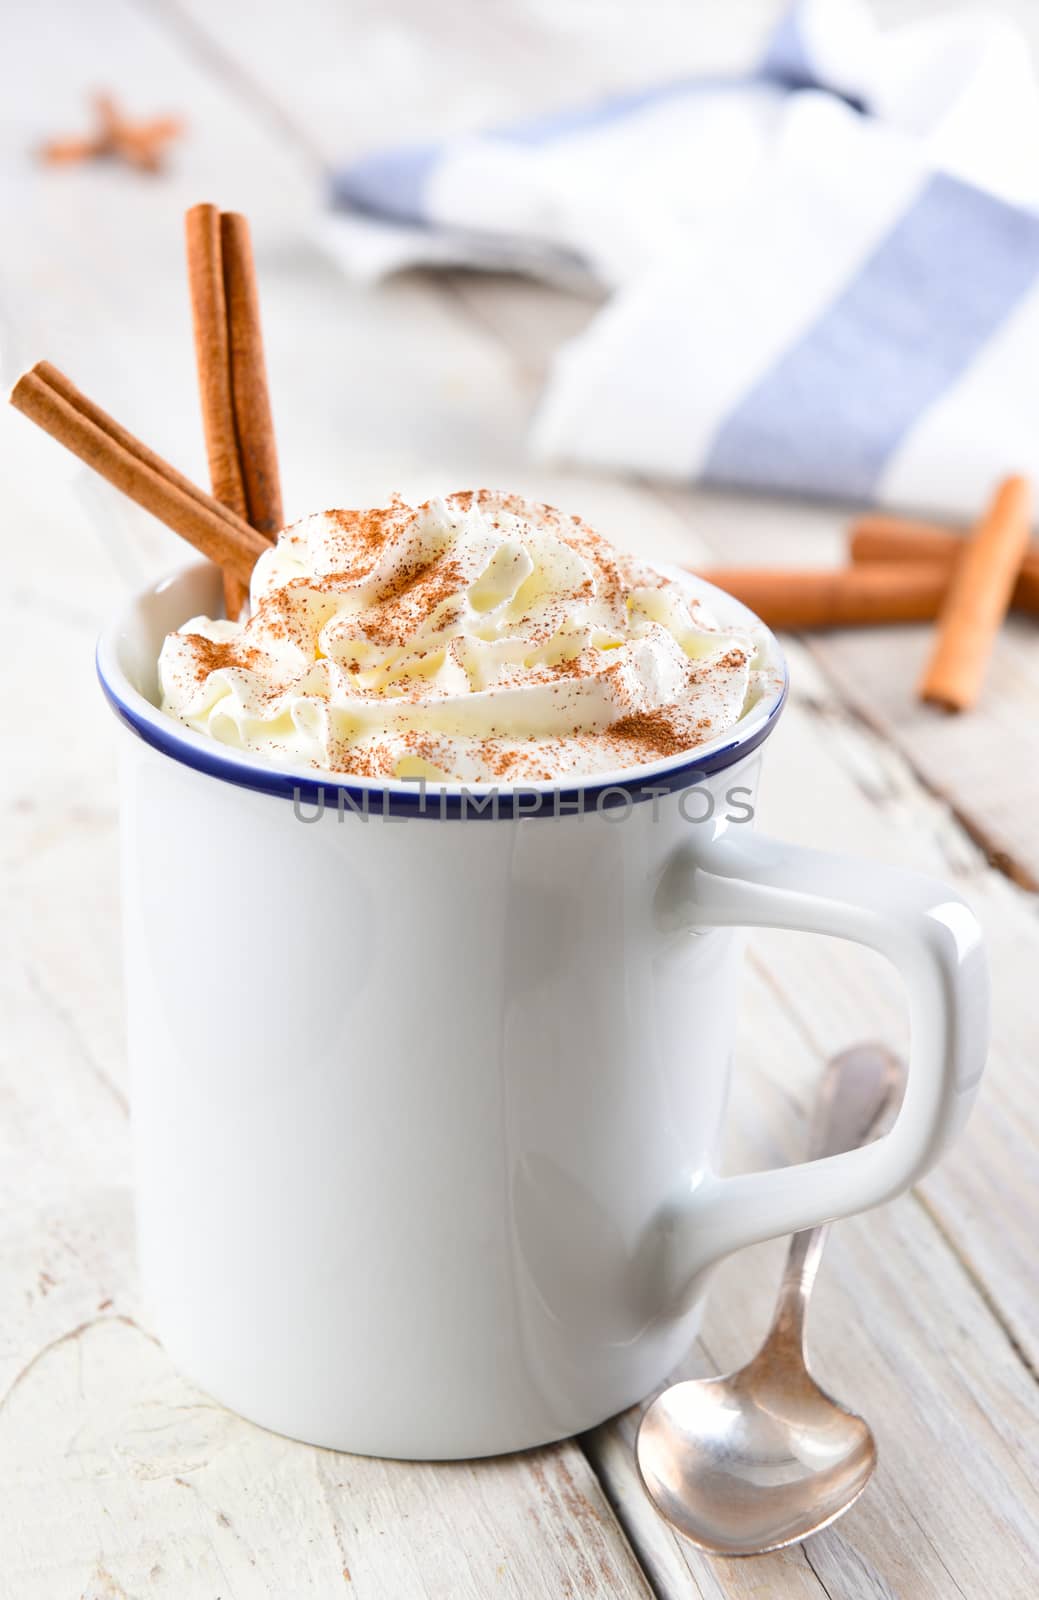 Hot Cocoa in white mug with cinnamon sticks by sCukrov